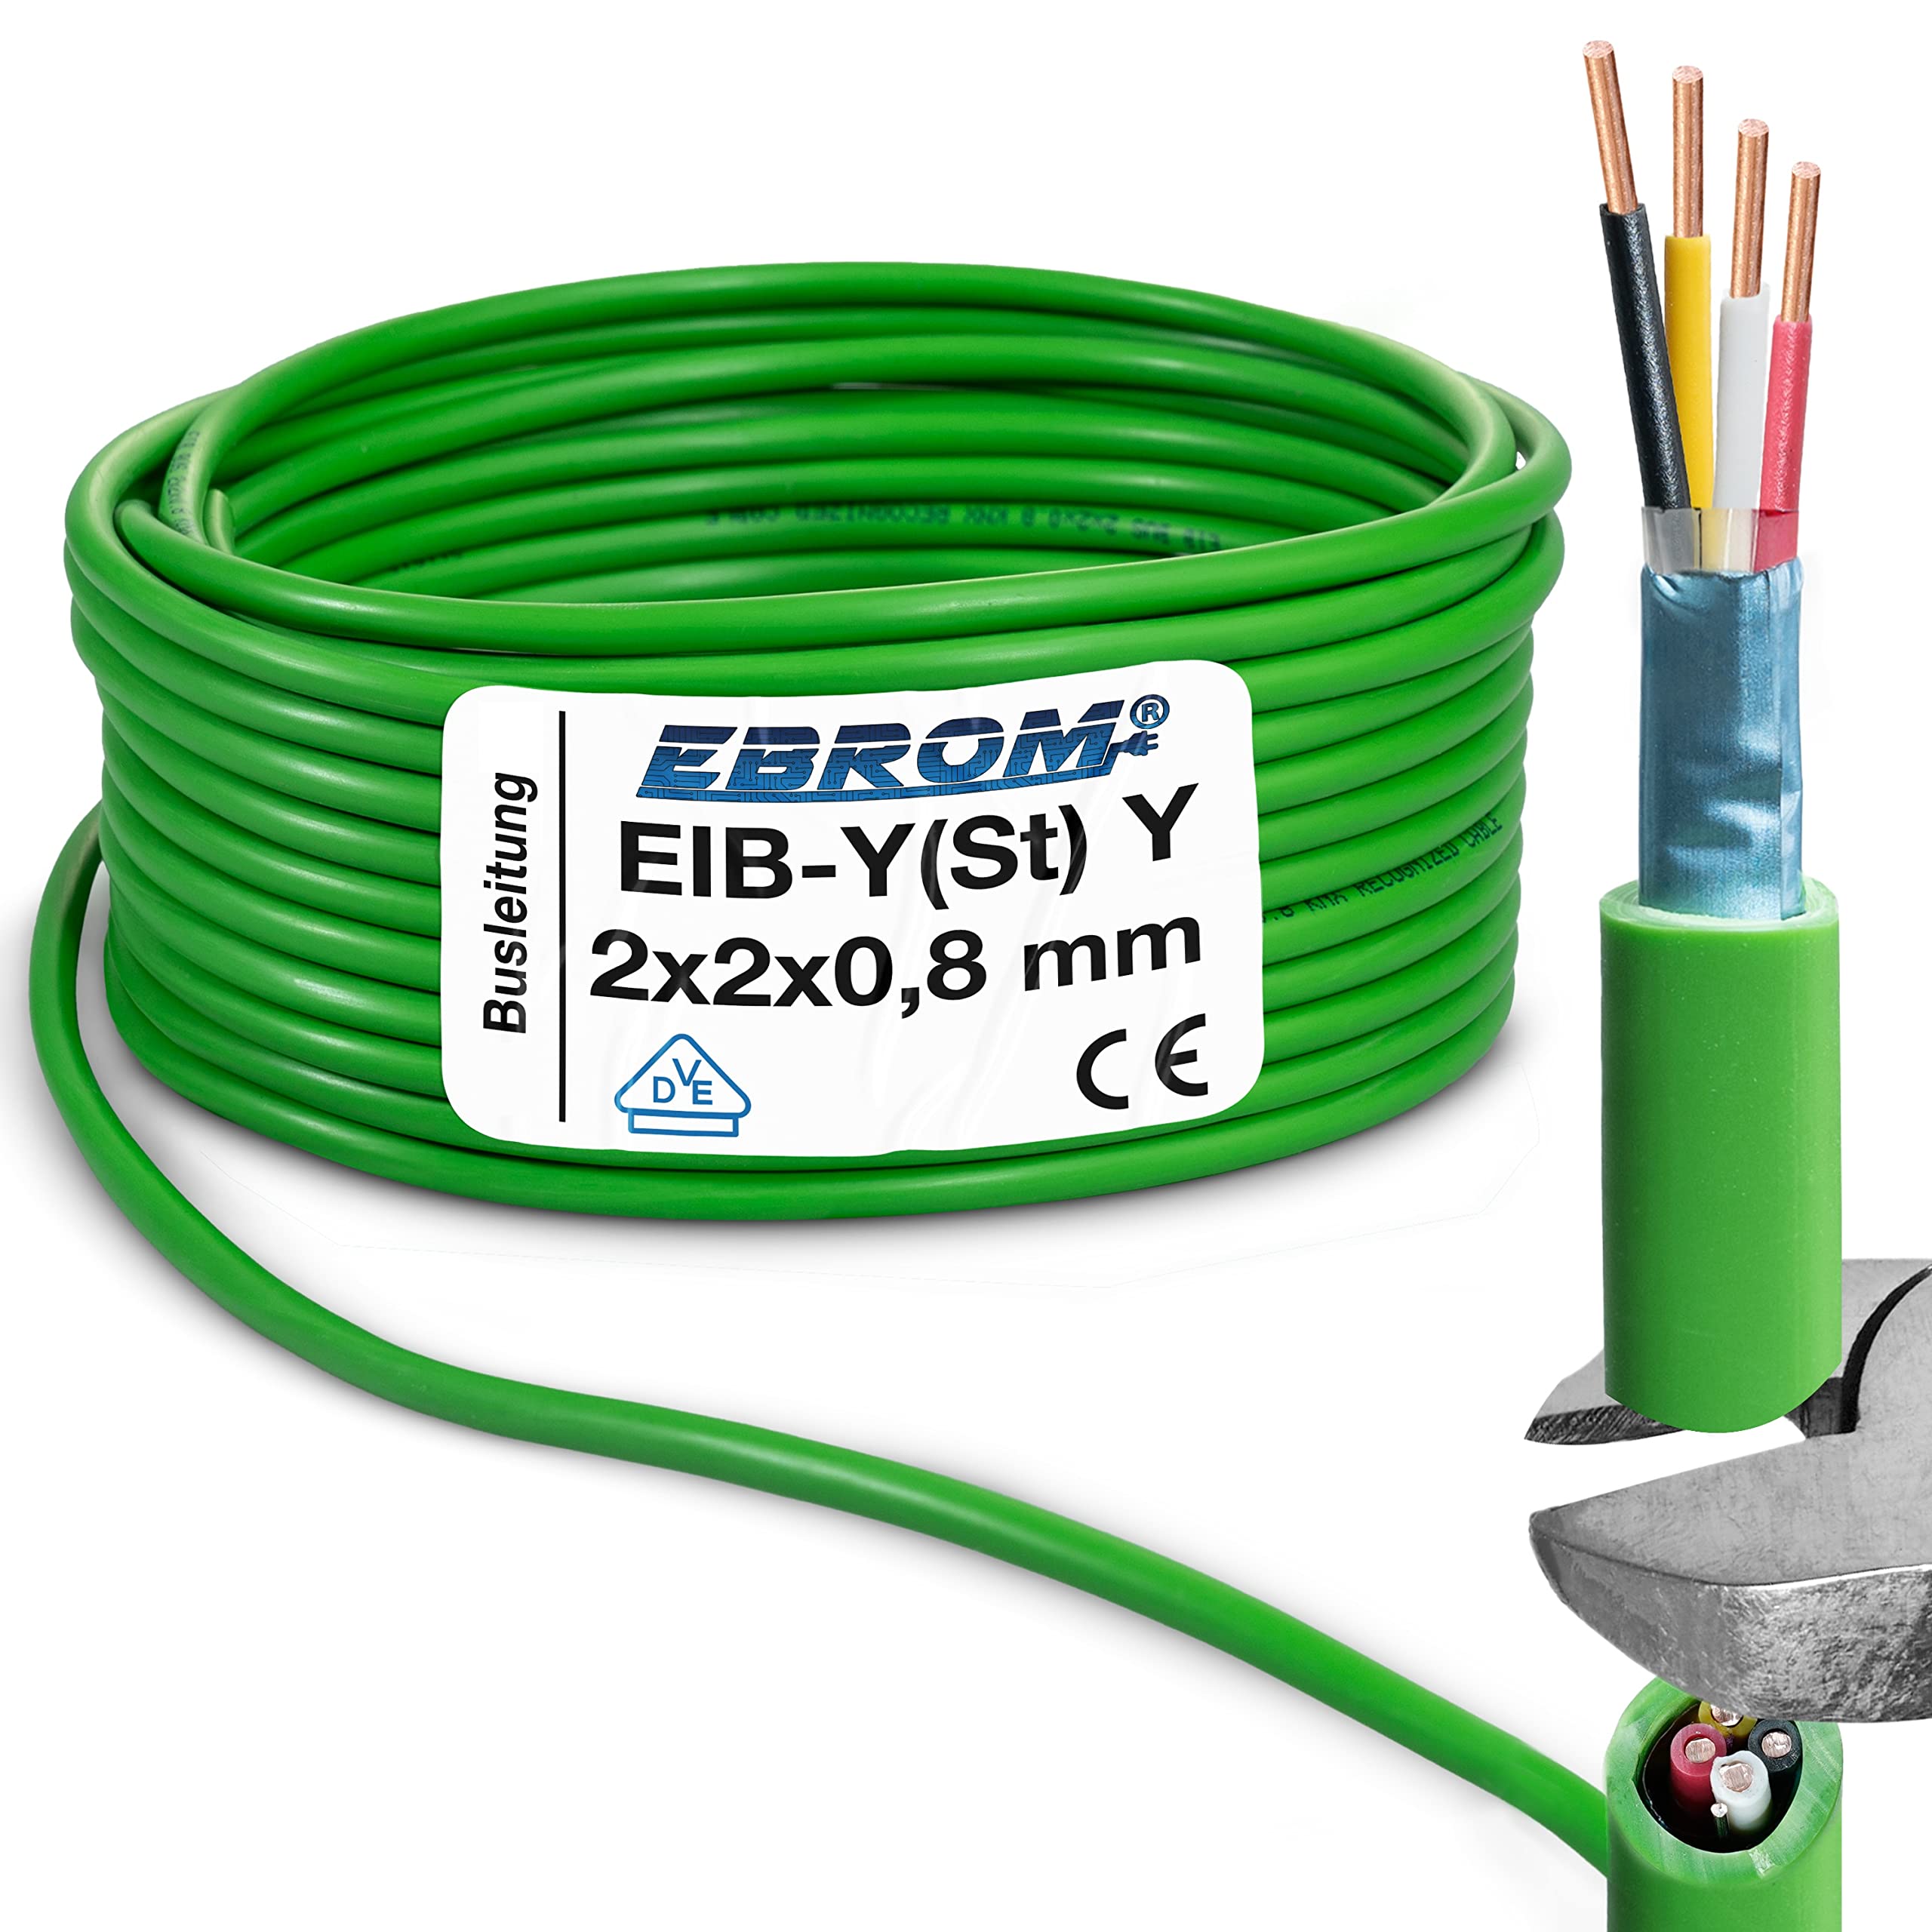 EIB Busleitung Kabel- EIB-Y(St) Y 2x2x0,8 mm grün Datenleitung/Datenkabel Installationsbusleitung Telekommunikationskabel – viele Längen - von 5 Meter bis 100 Meter – Ihre ausgewählte Länge: 80 Meter